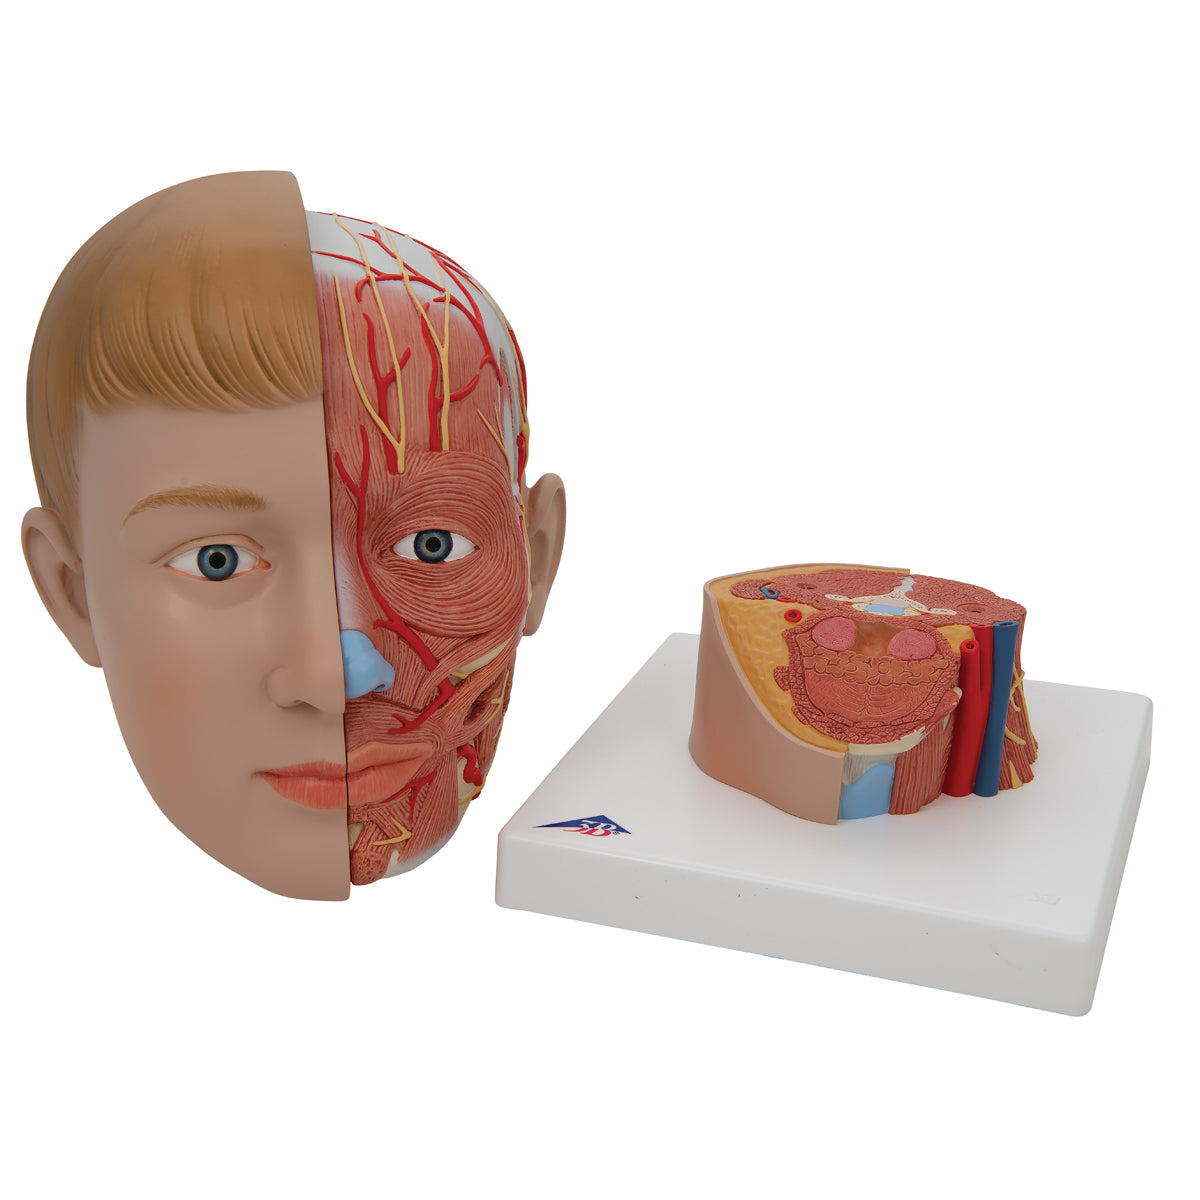 Model af hovedet med blotlagte muskler, kar og nerver